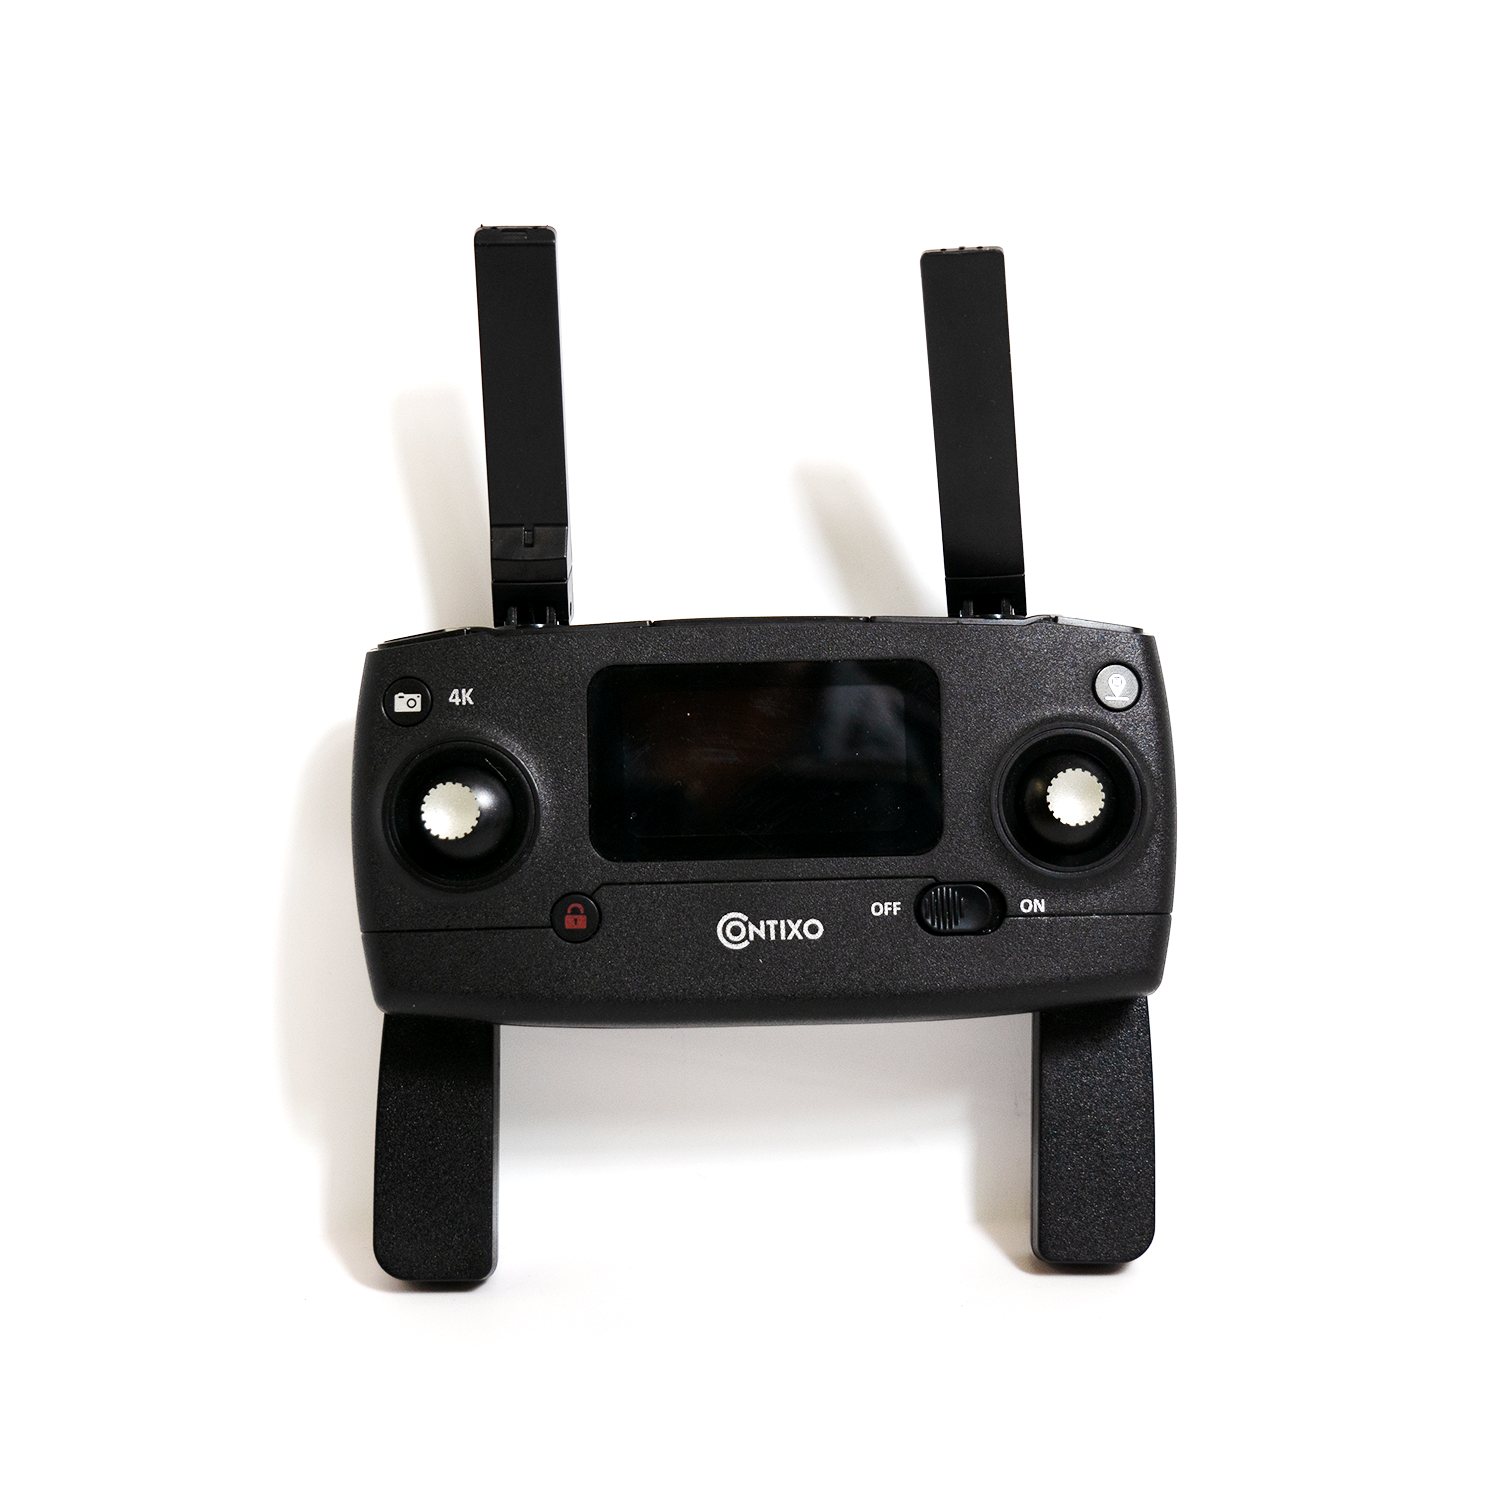 Contixo F30 Drone -Spare Remote Controller, High Range Drone Transmitter